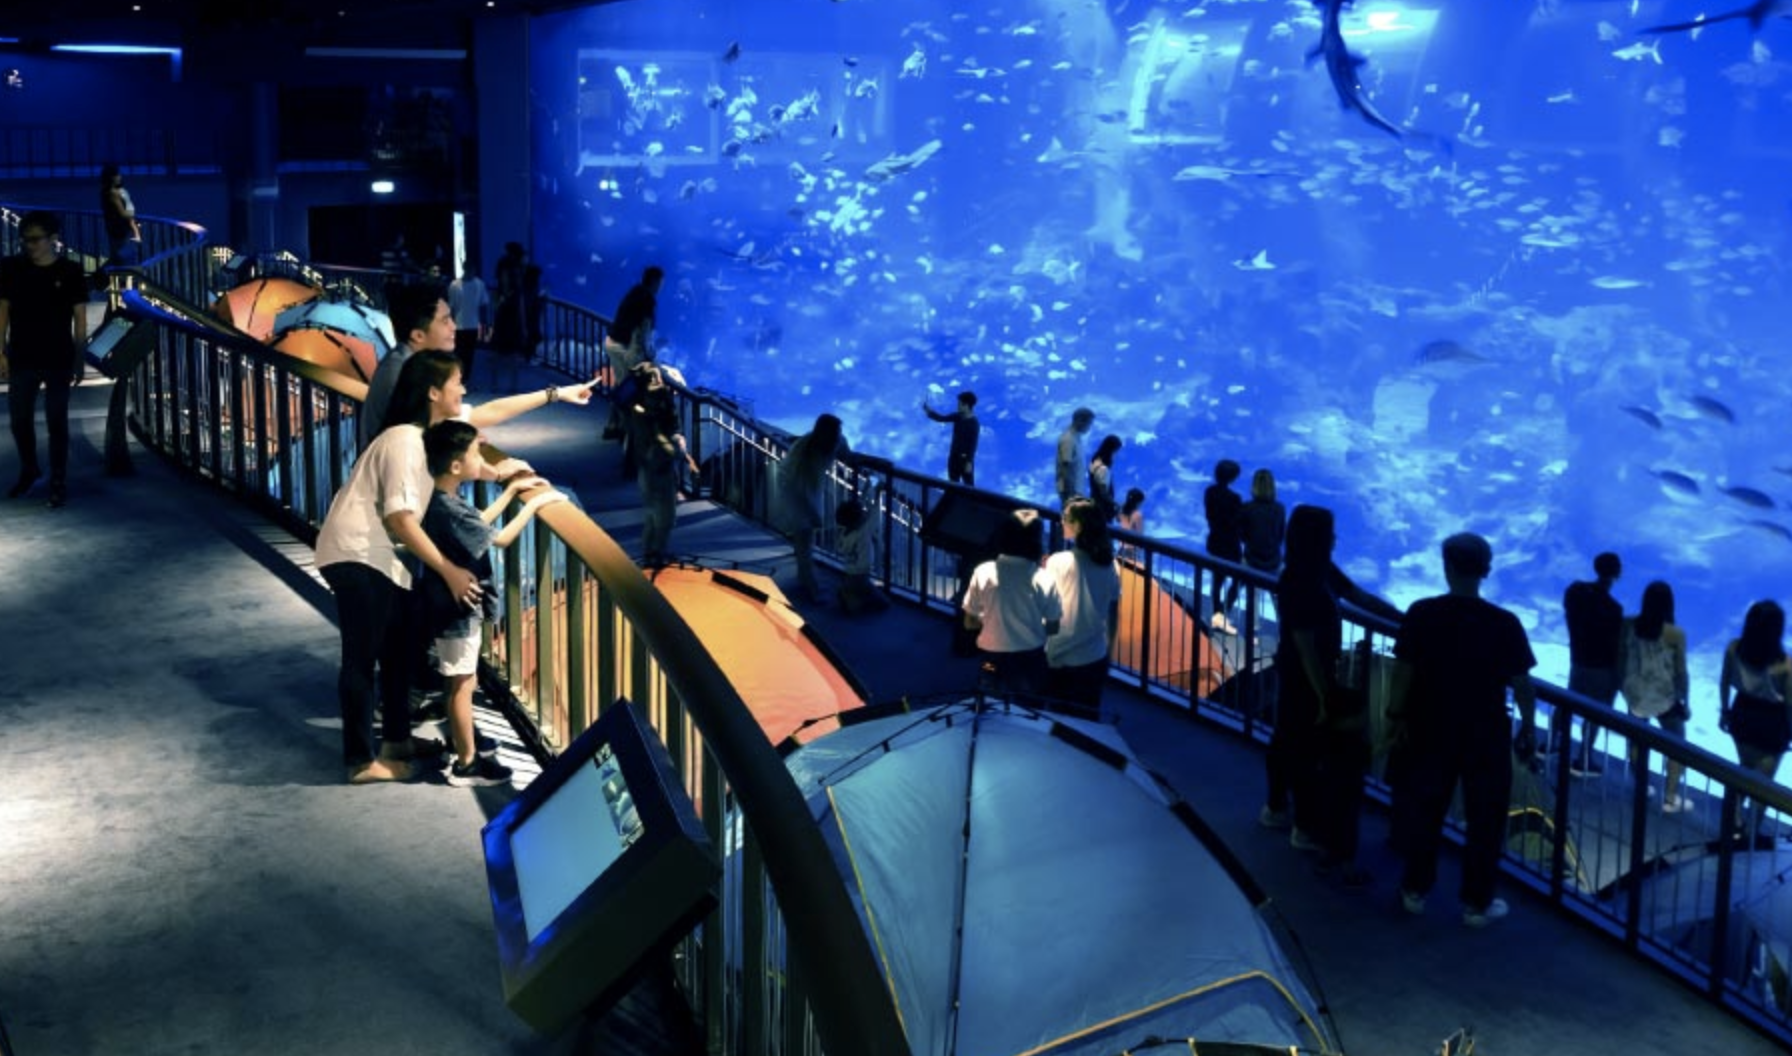 SEA Sleepover at Aquarium in Singapore